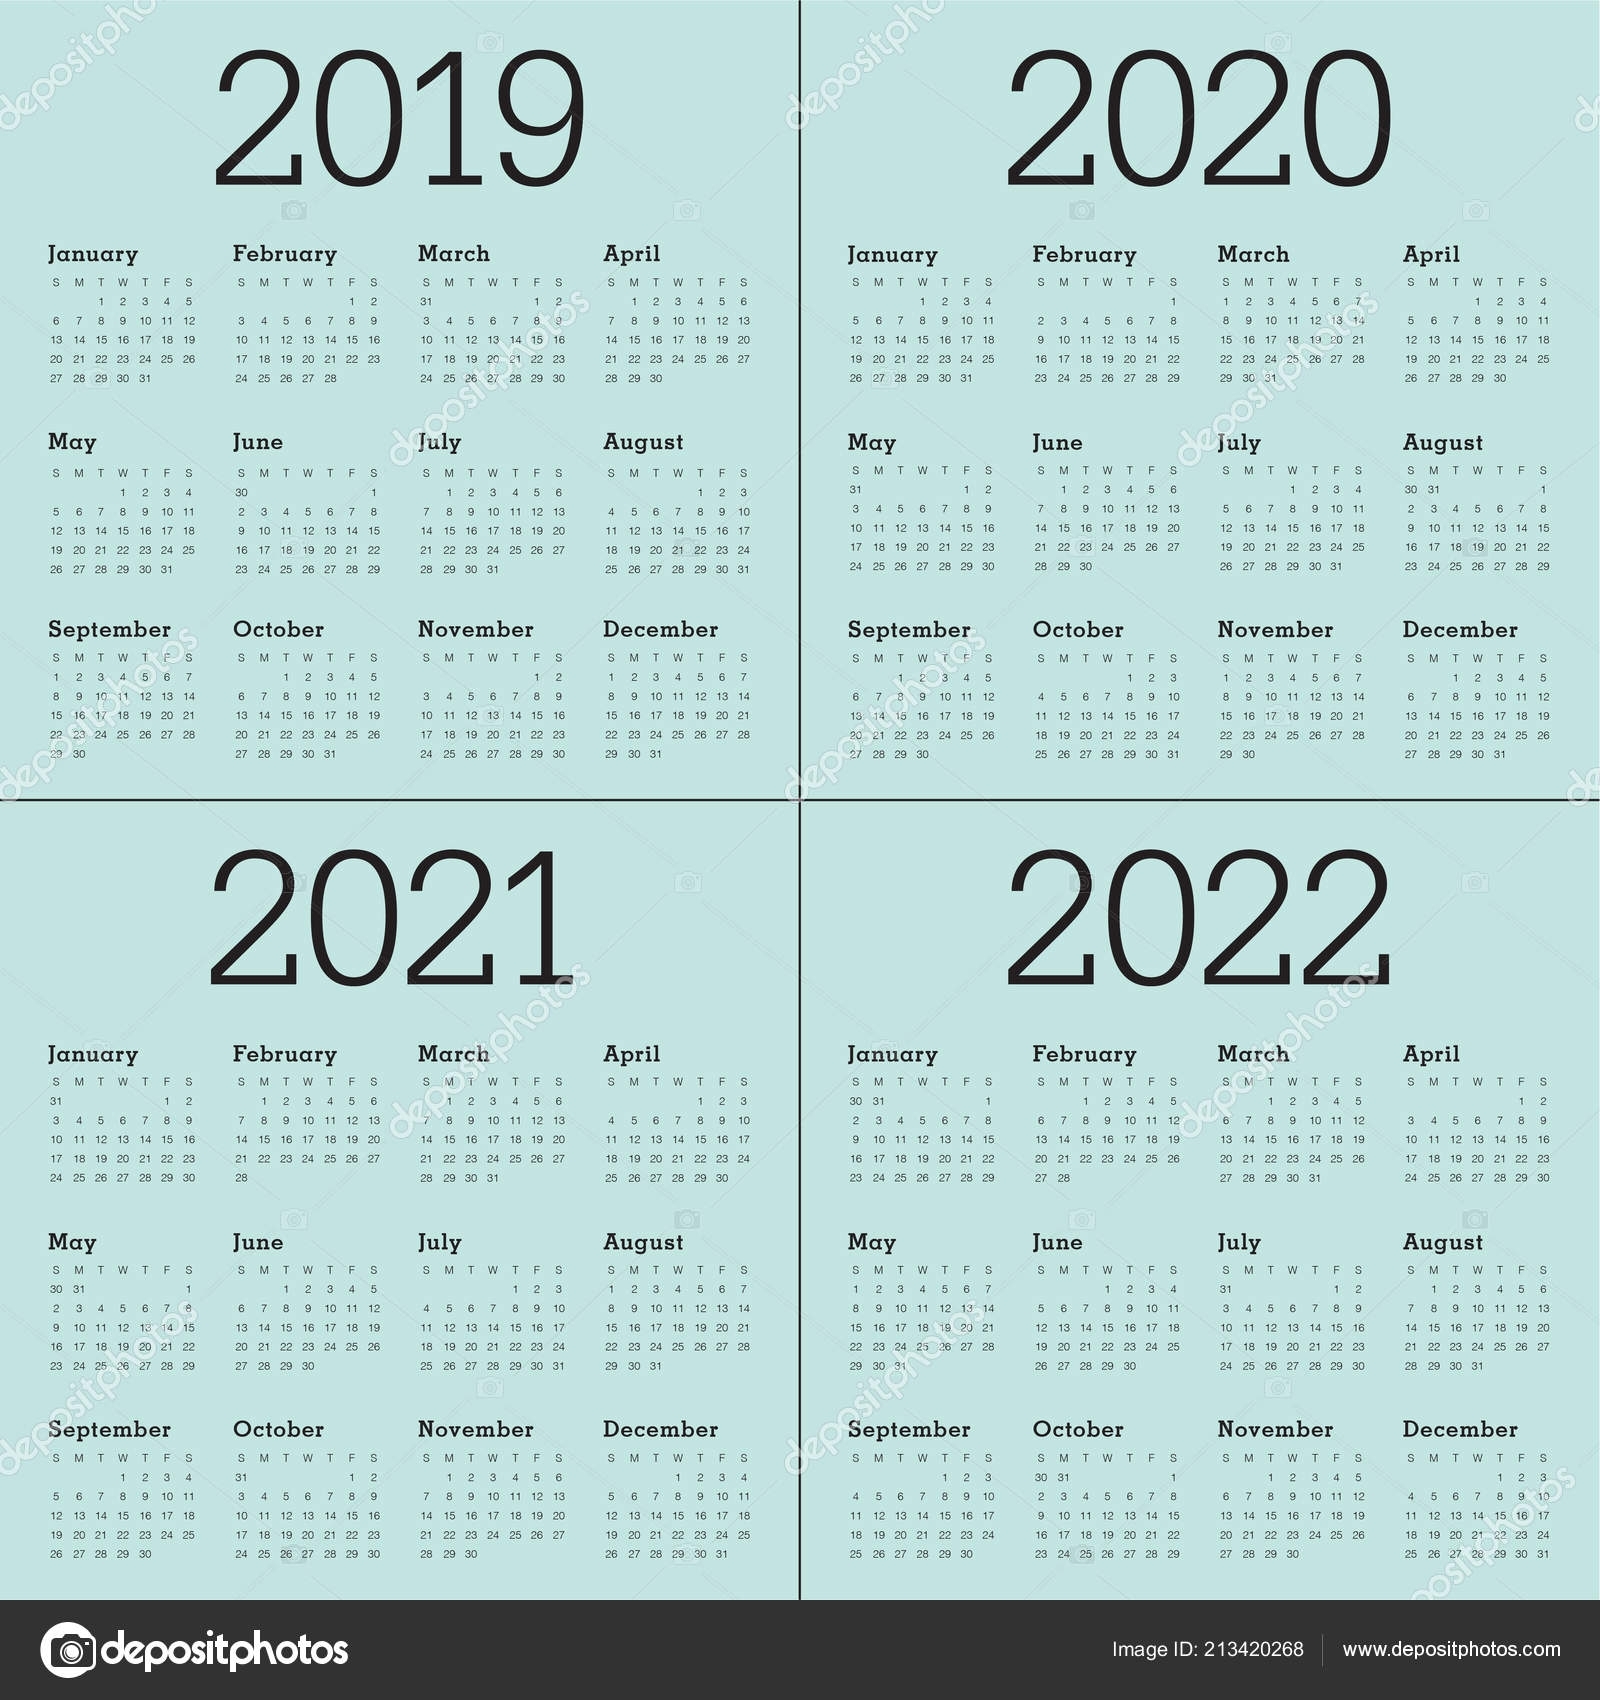 Year 2019 2020 2021 2022 Calendar Vector Design Template with regard to 2019 2020 2021 2022 Calendars